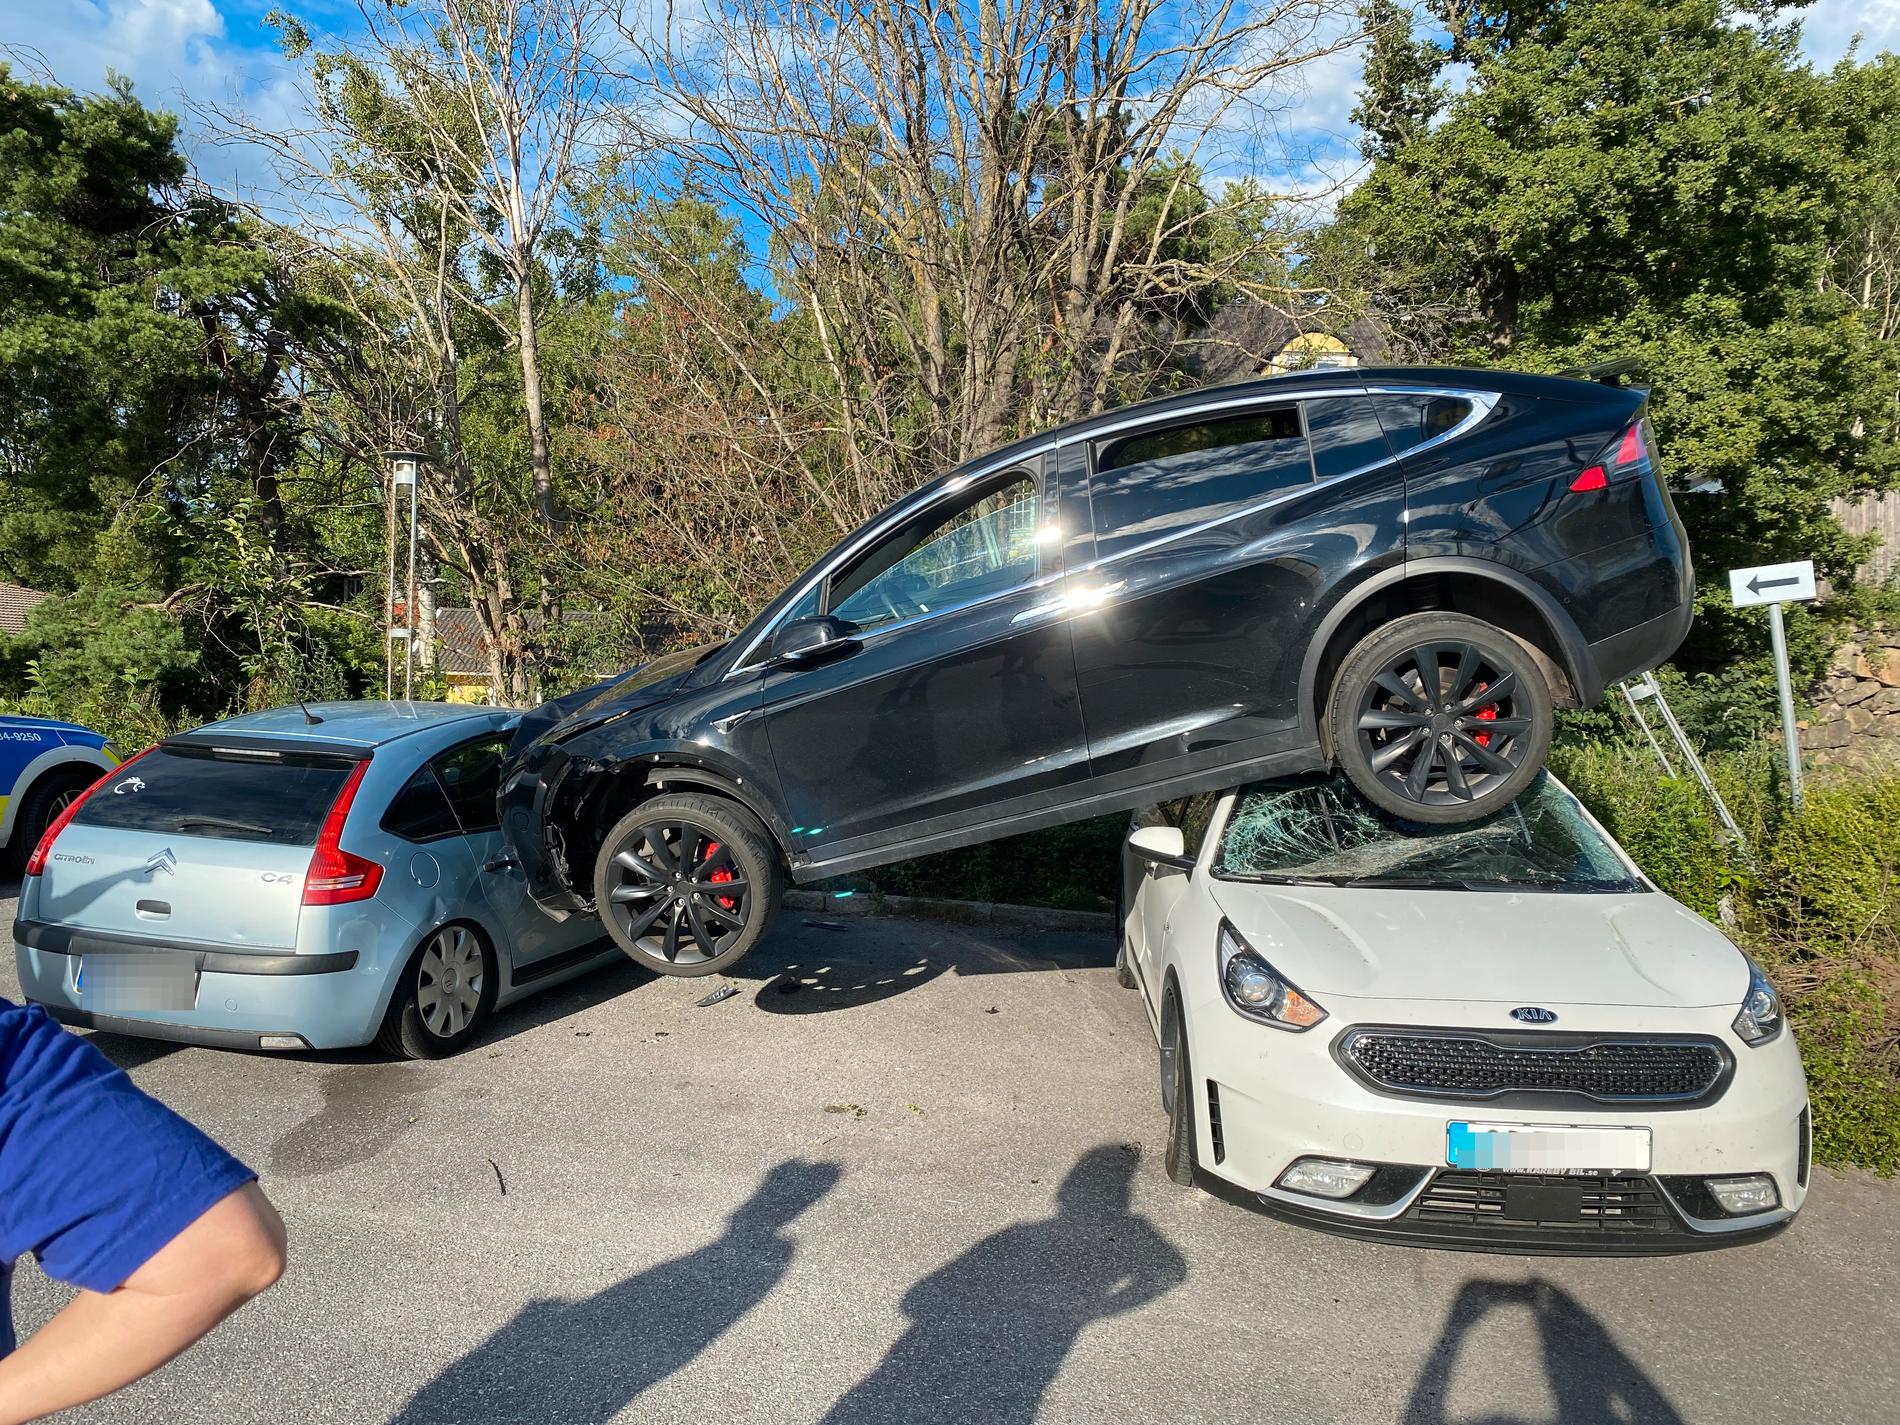 Teslan hade flugit över en bil och såg ut att hänga i luften.